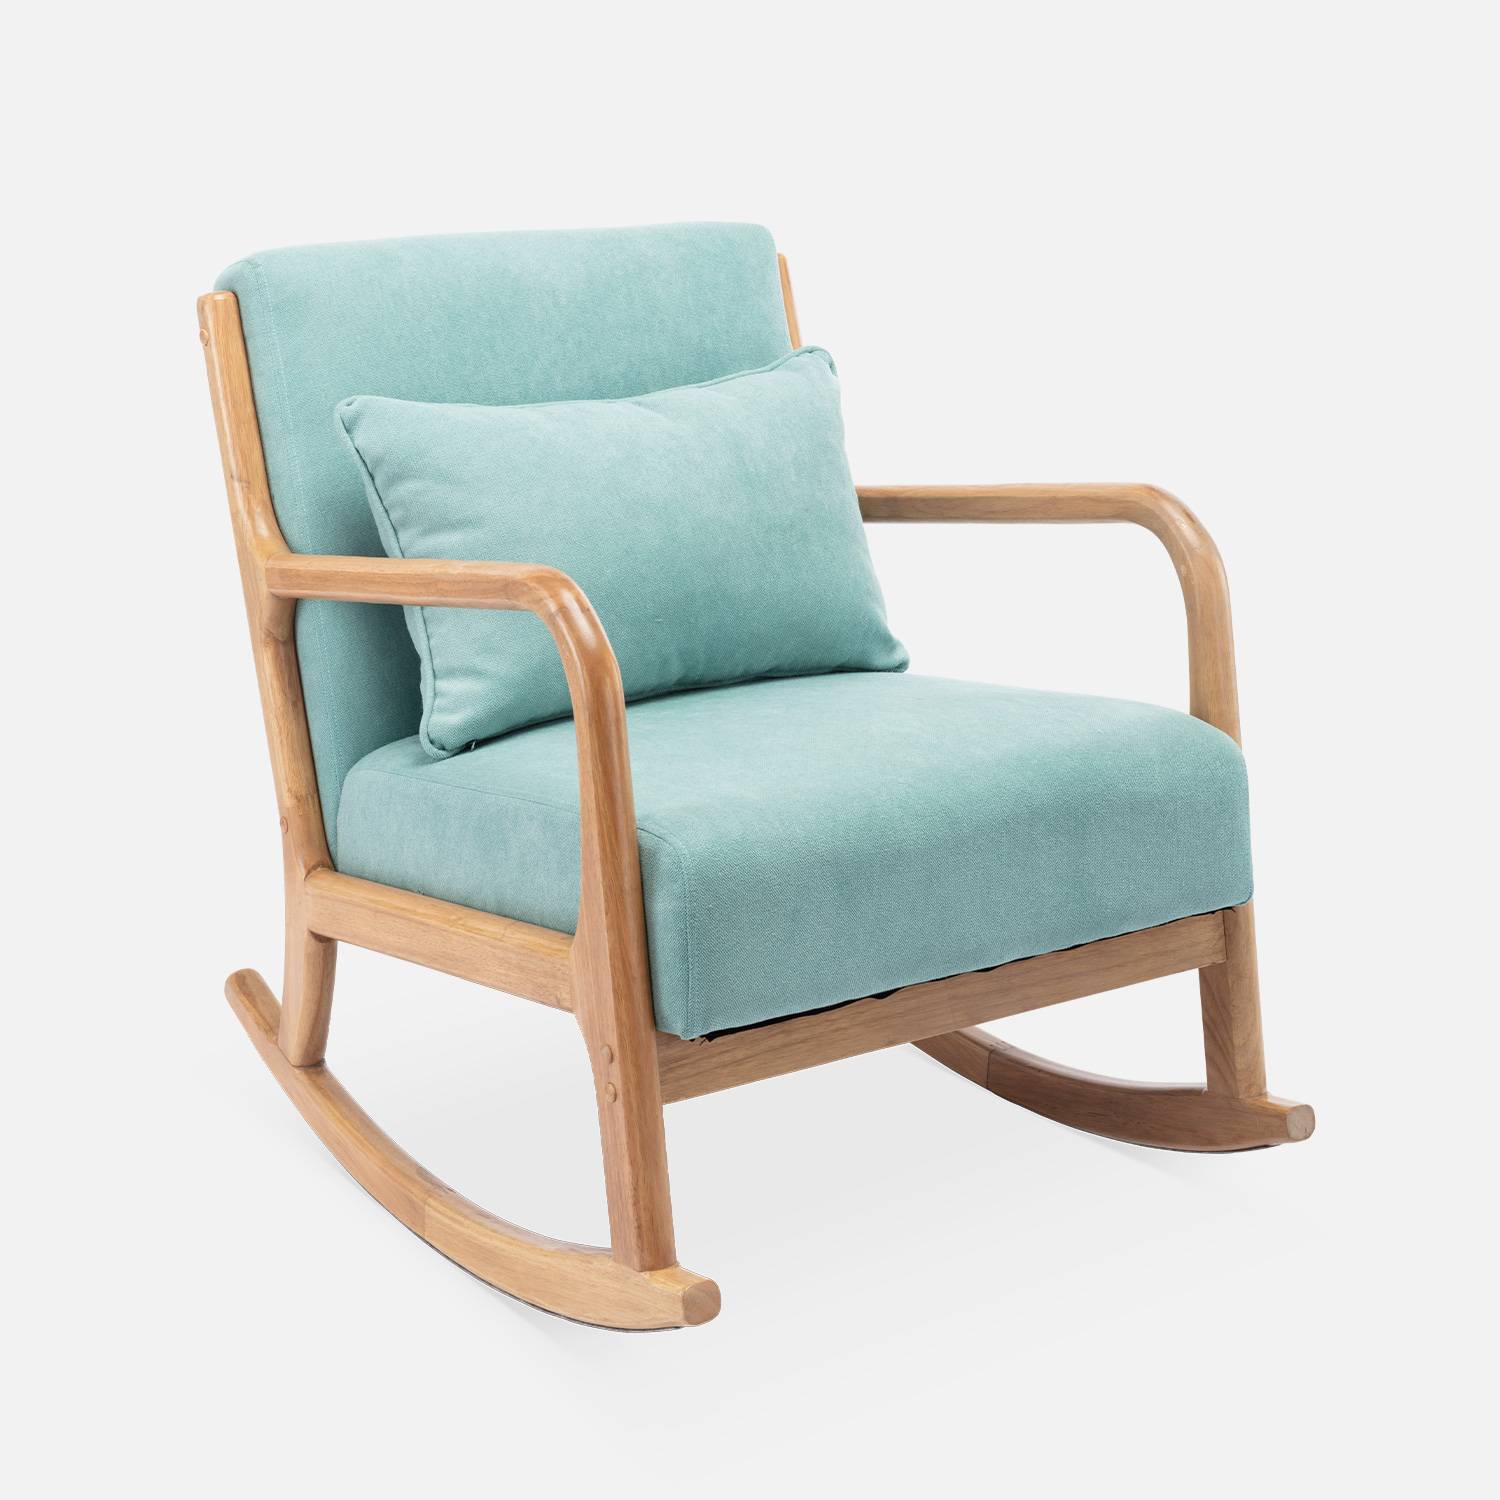 Sedia a dondolo di design in legno e tessuto, 1 posto, sedia a dondolo scandinava, verde acqua Photo3